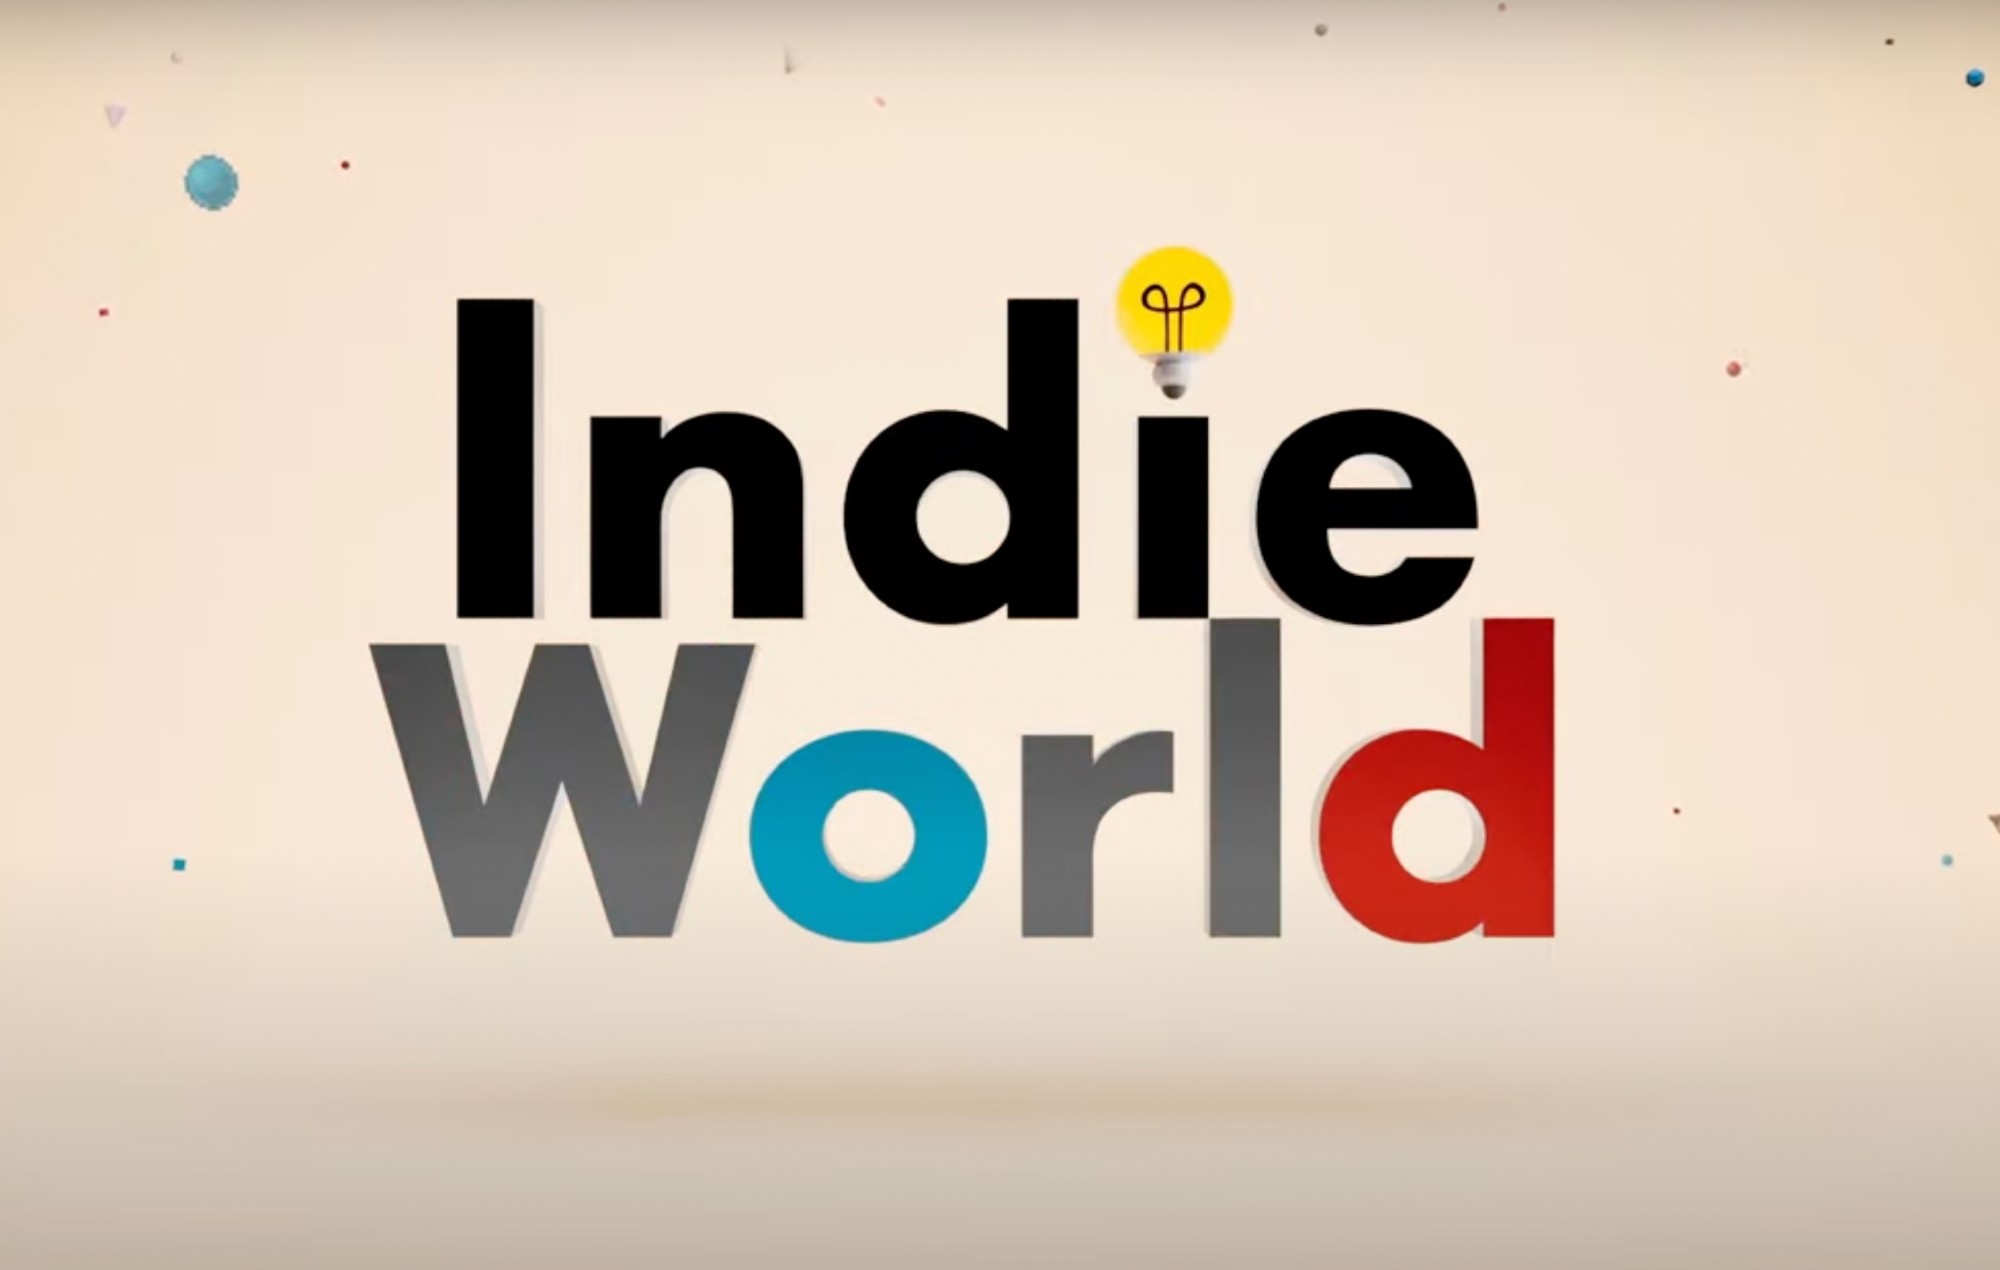 El Indie World Showcase de Nintendo presentó muchos juegos y chats divertidos